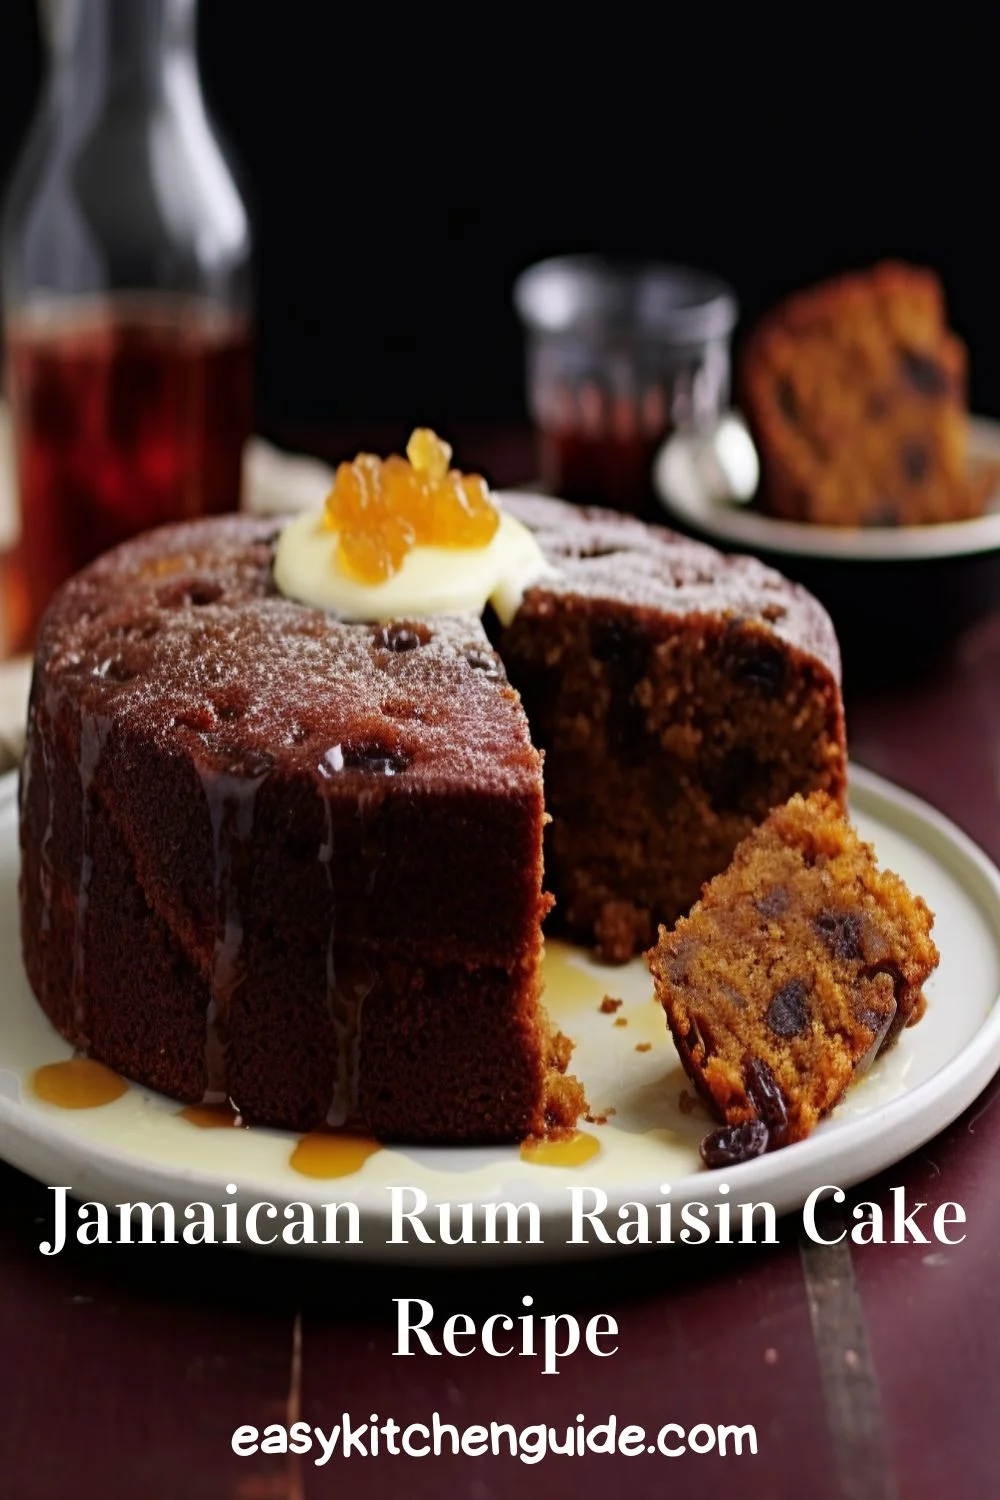 Jamaican Rum Raisin Cake Recipe